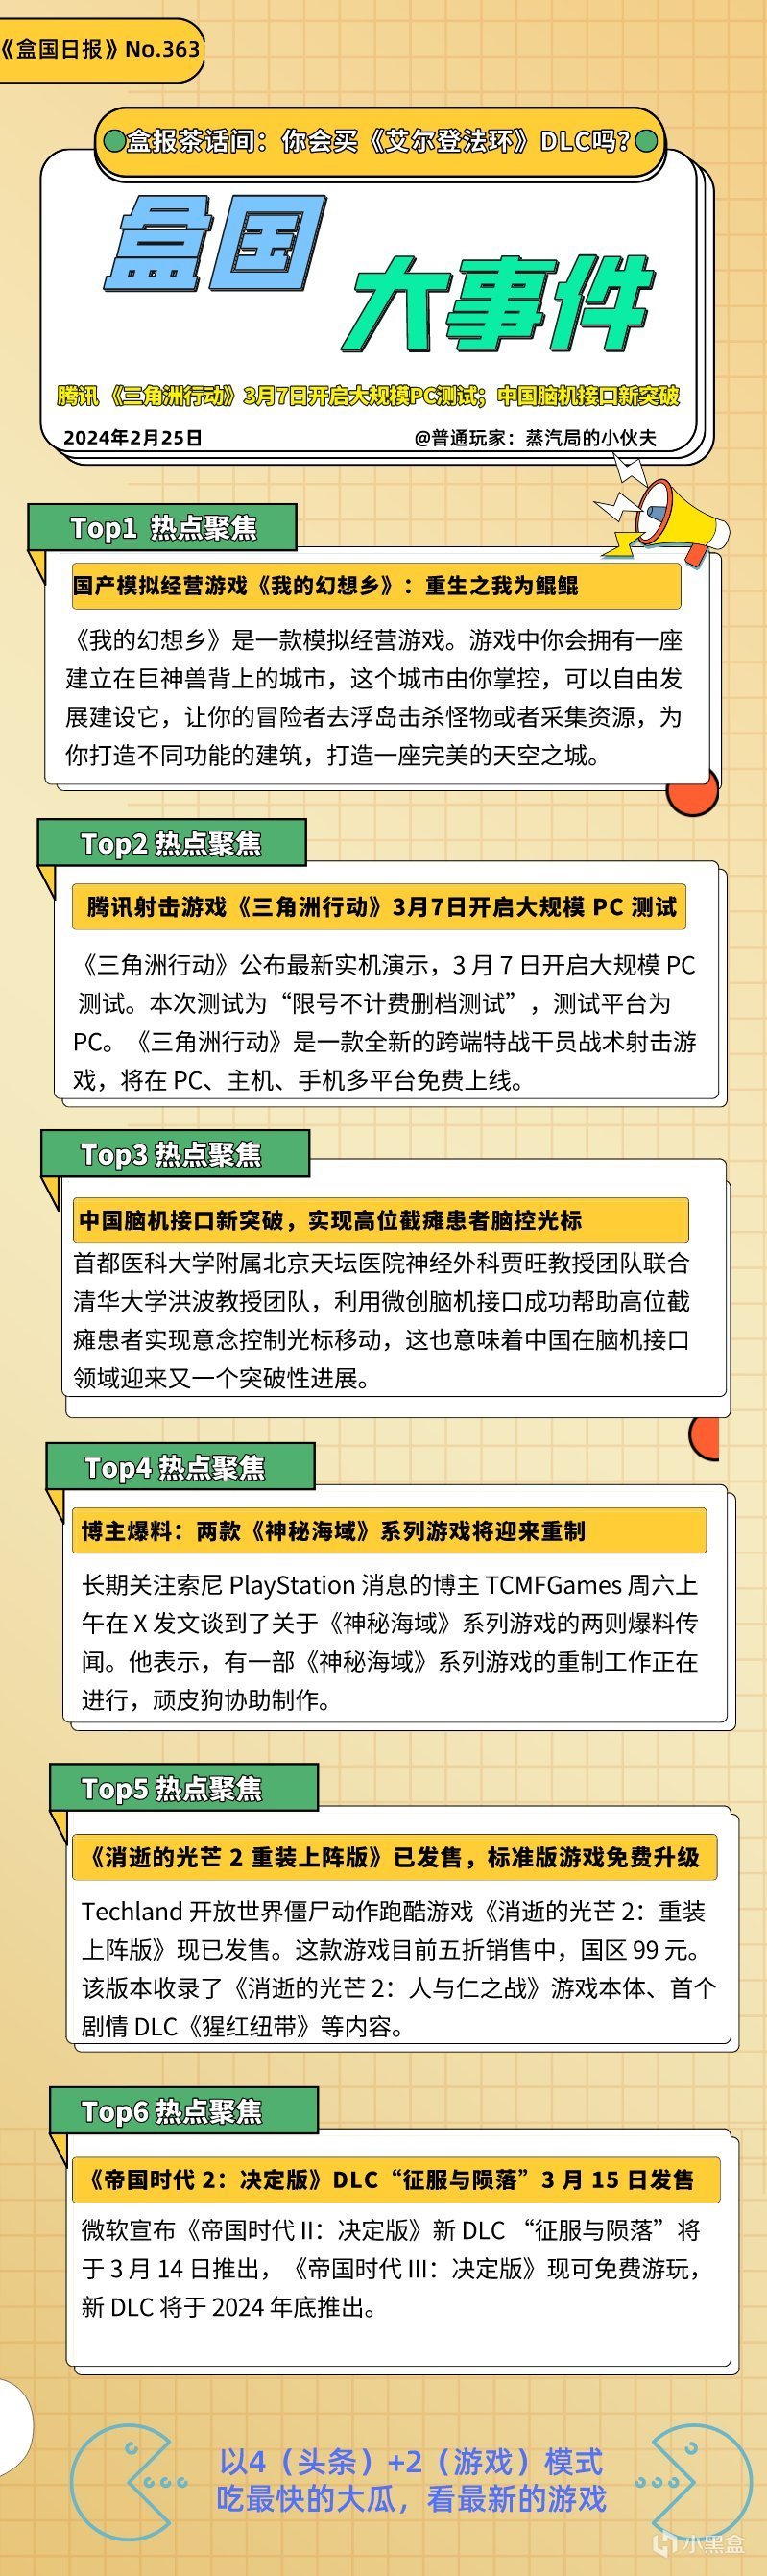 【PC遊戲】騰訊 《三角洲行動》PC測試定檔3月7日；中國腦機接口技術新突破